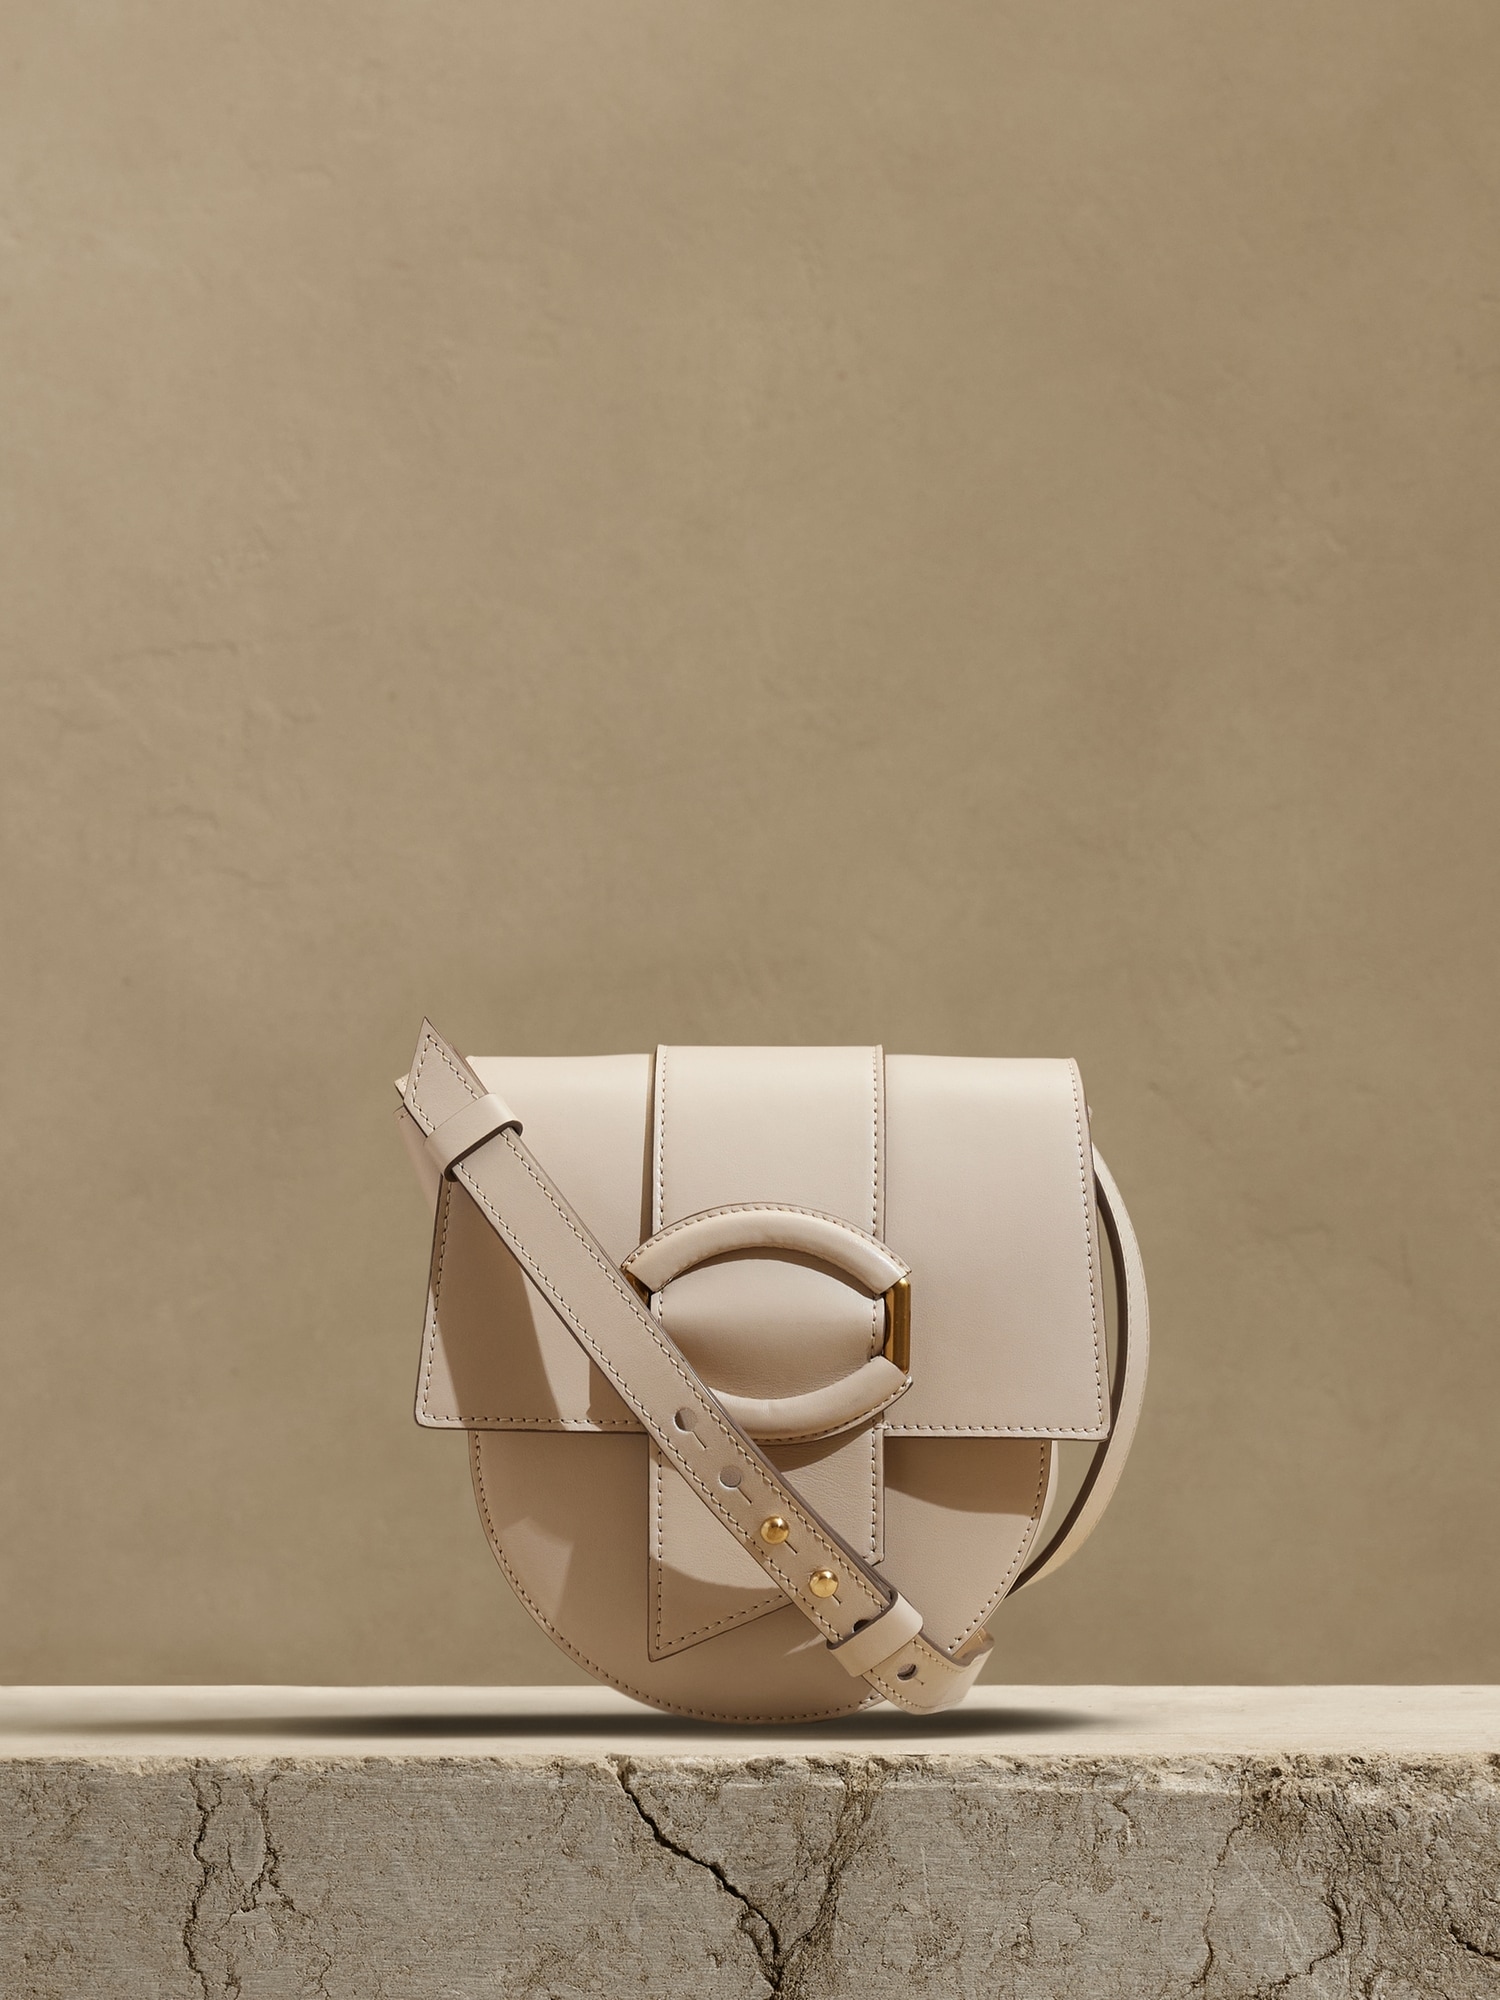 Designer leather handbag Gia Sling Bag